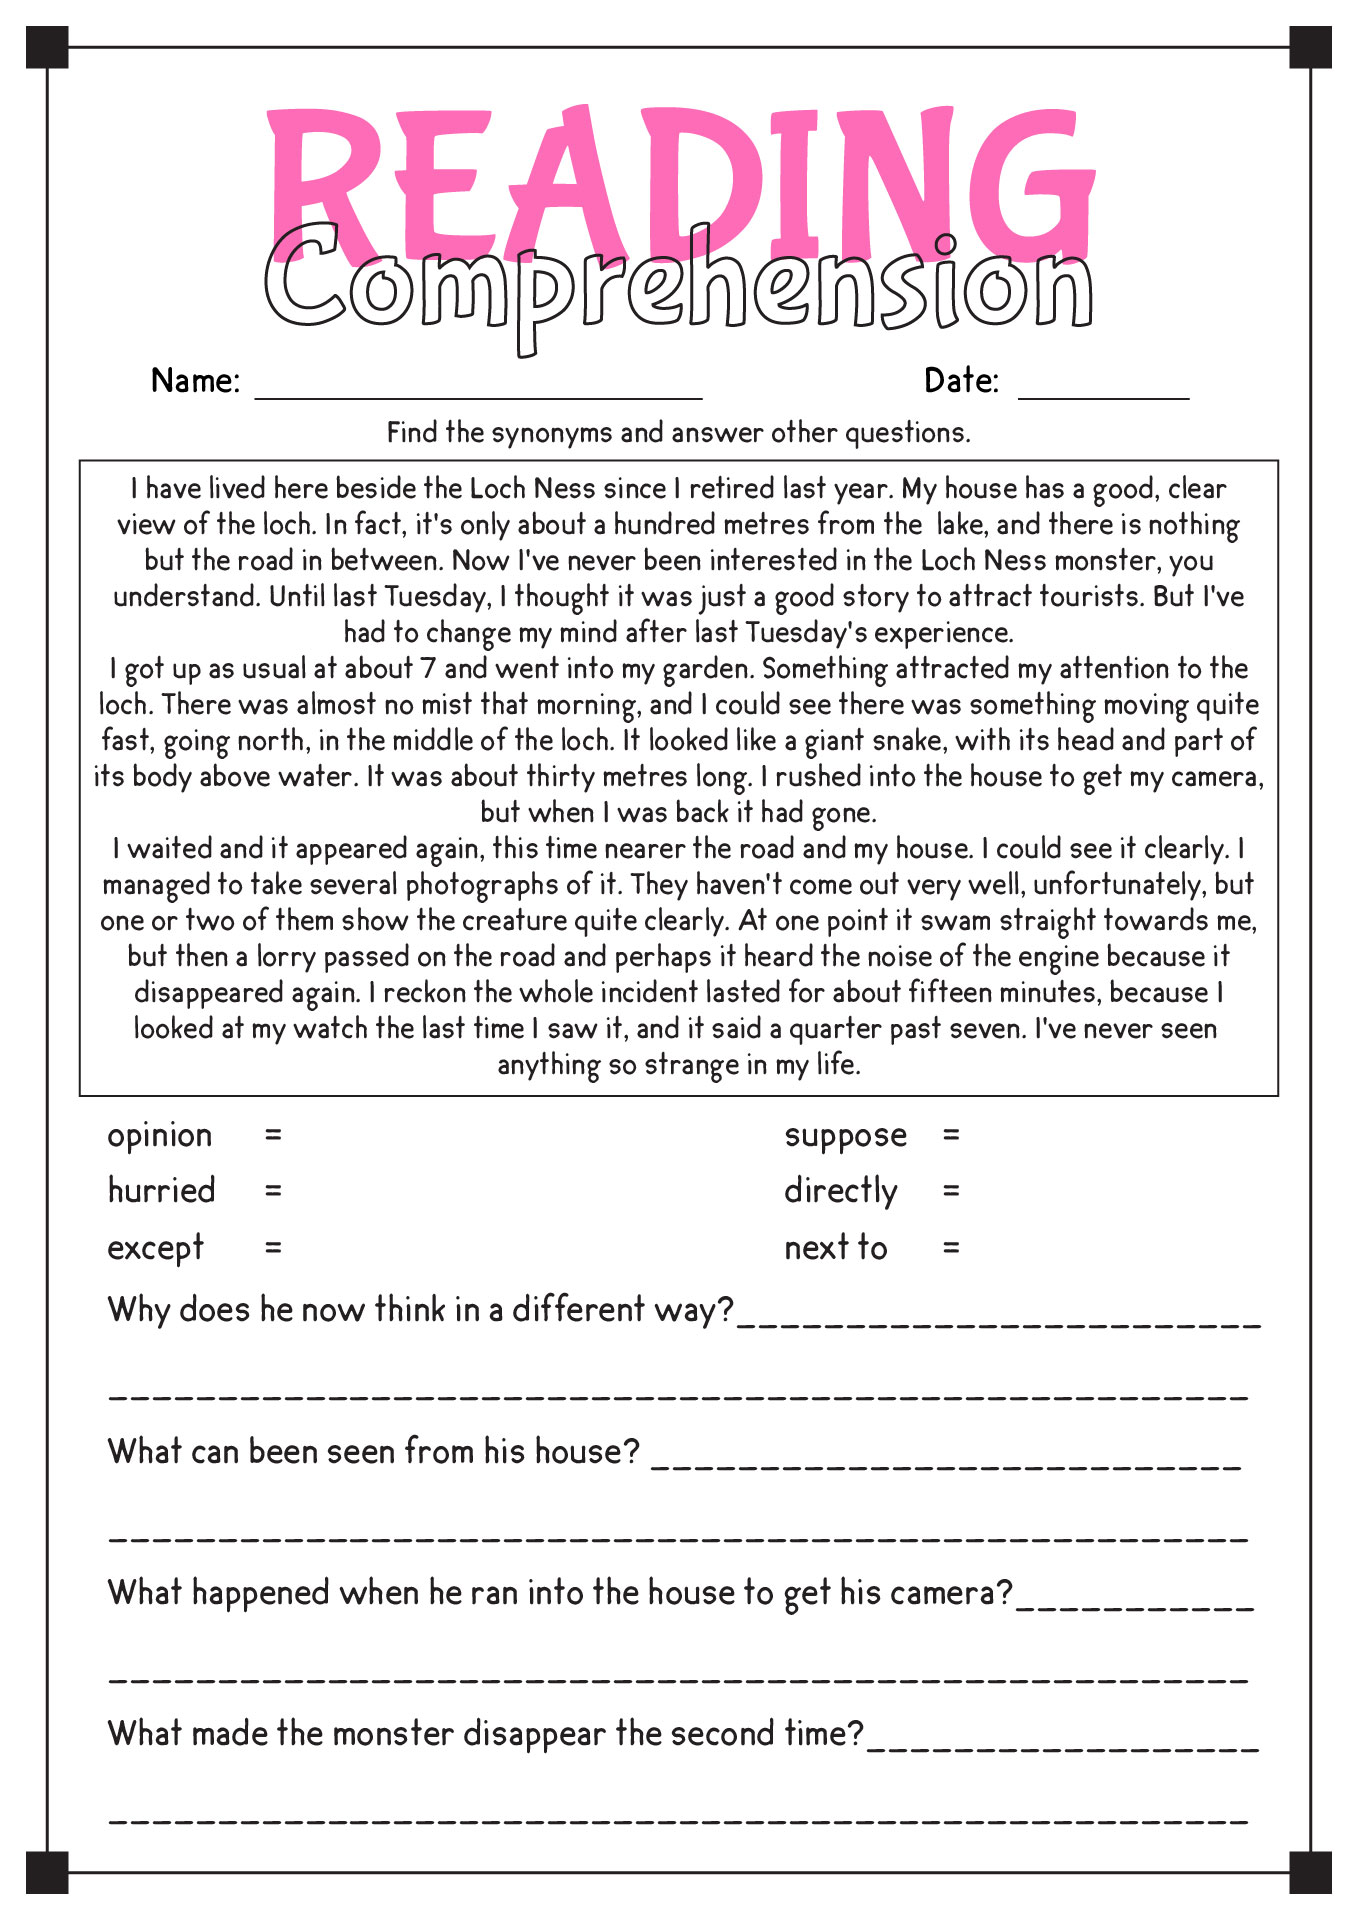 Free Adult Reading Comprehension Worksheets Image